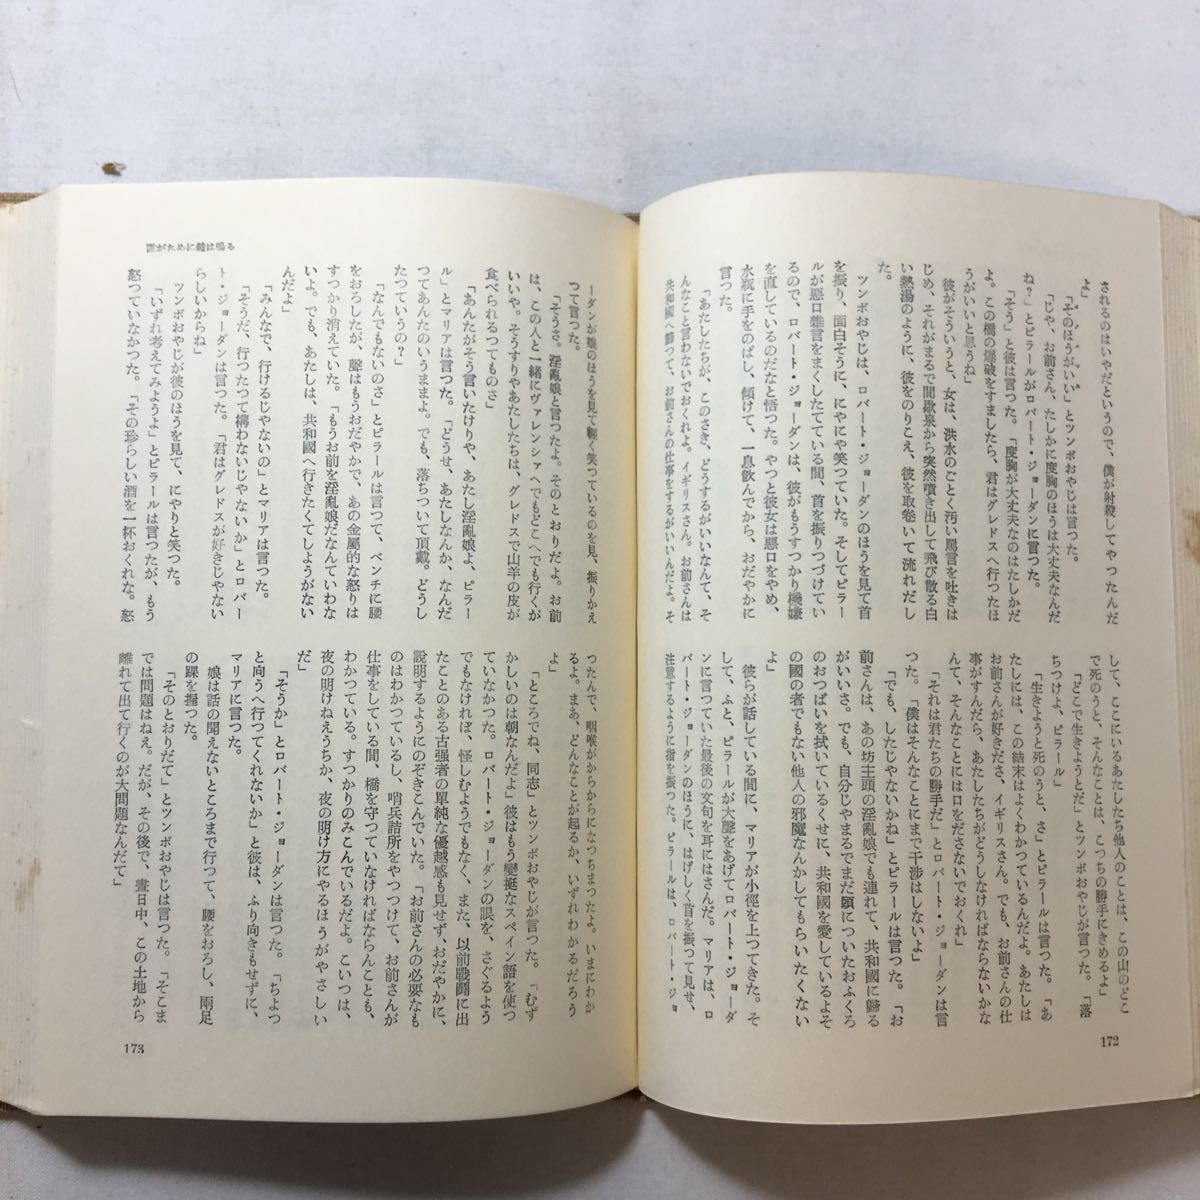 zaa-433♪ヘミングウエイ全集5 大久保康雄(訳)　三笠書房　1964/2/25